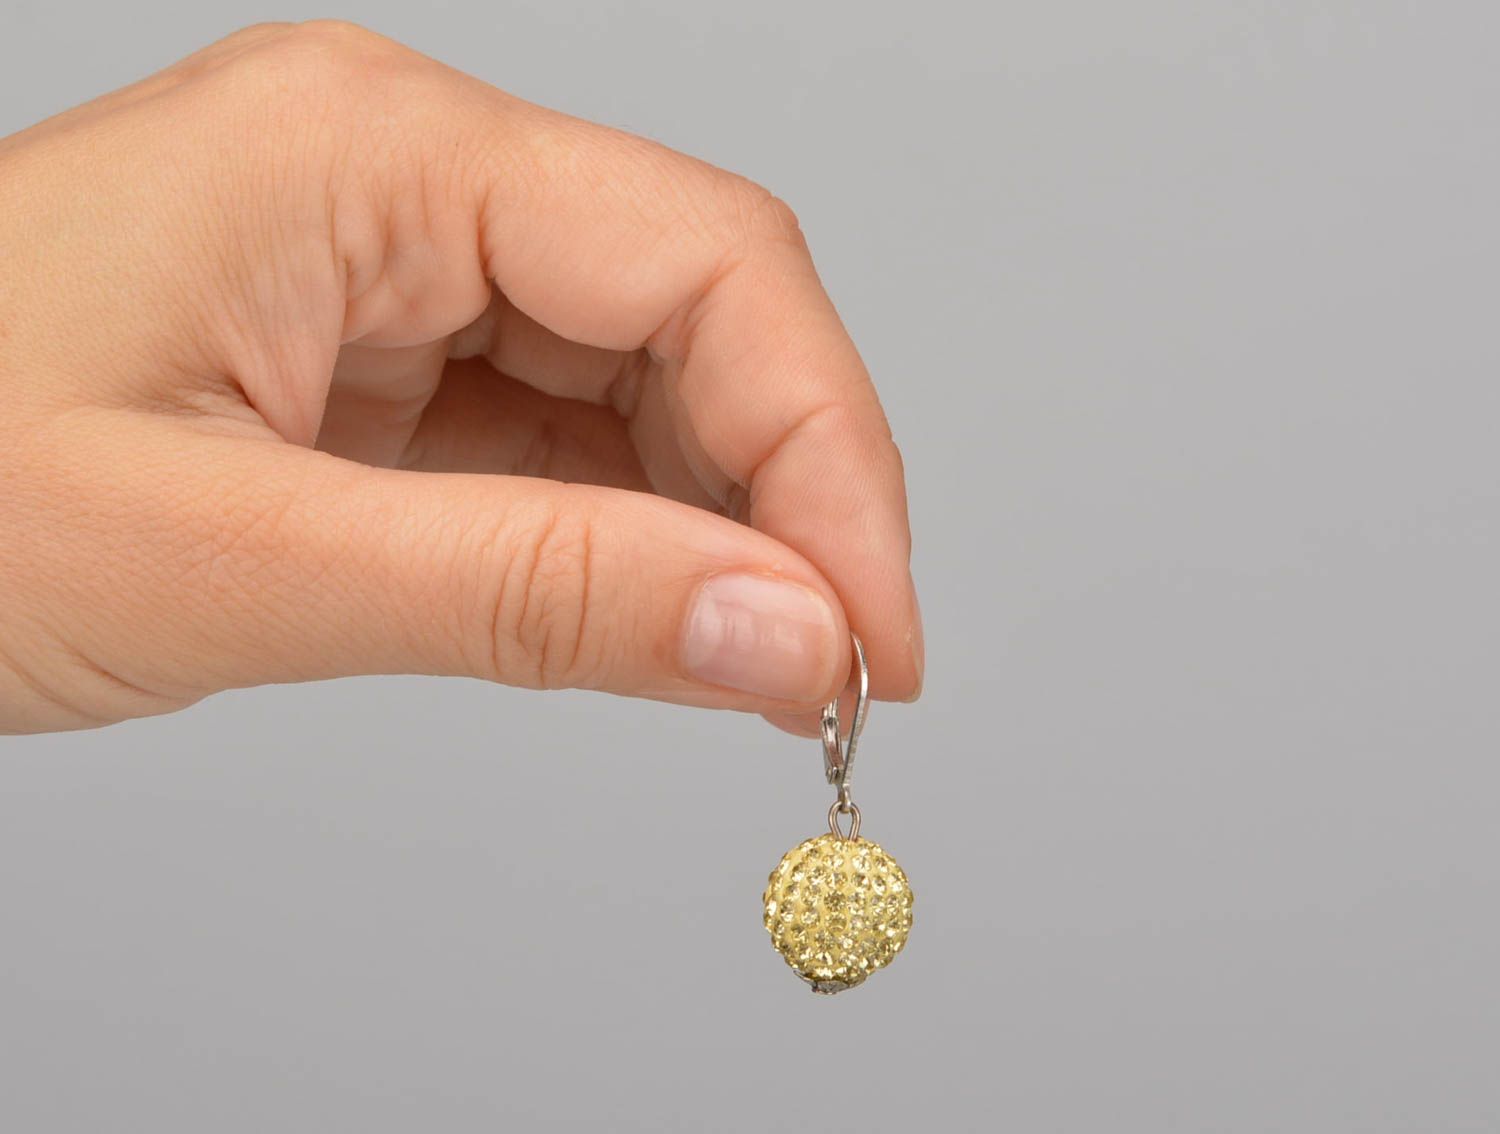 Small handmade metal earrings beaded ball earrings designer jewelry for her photo 1